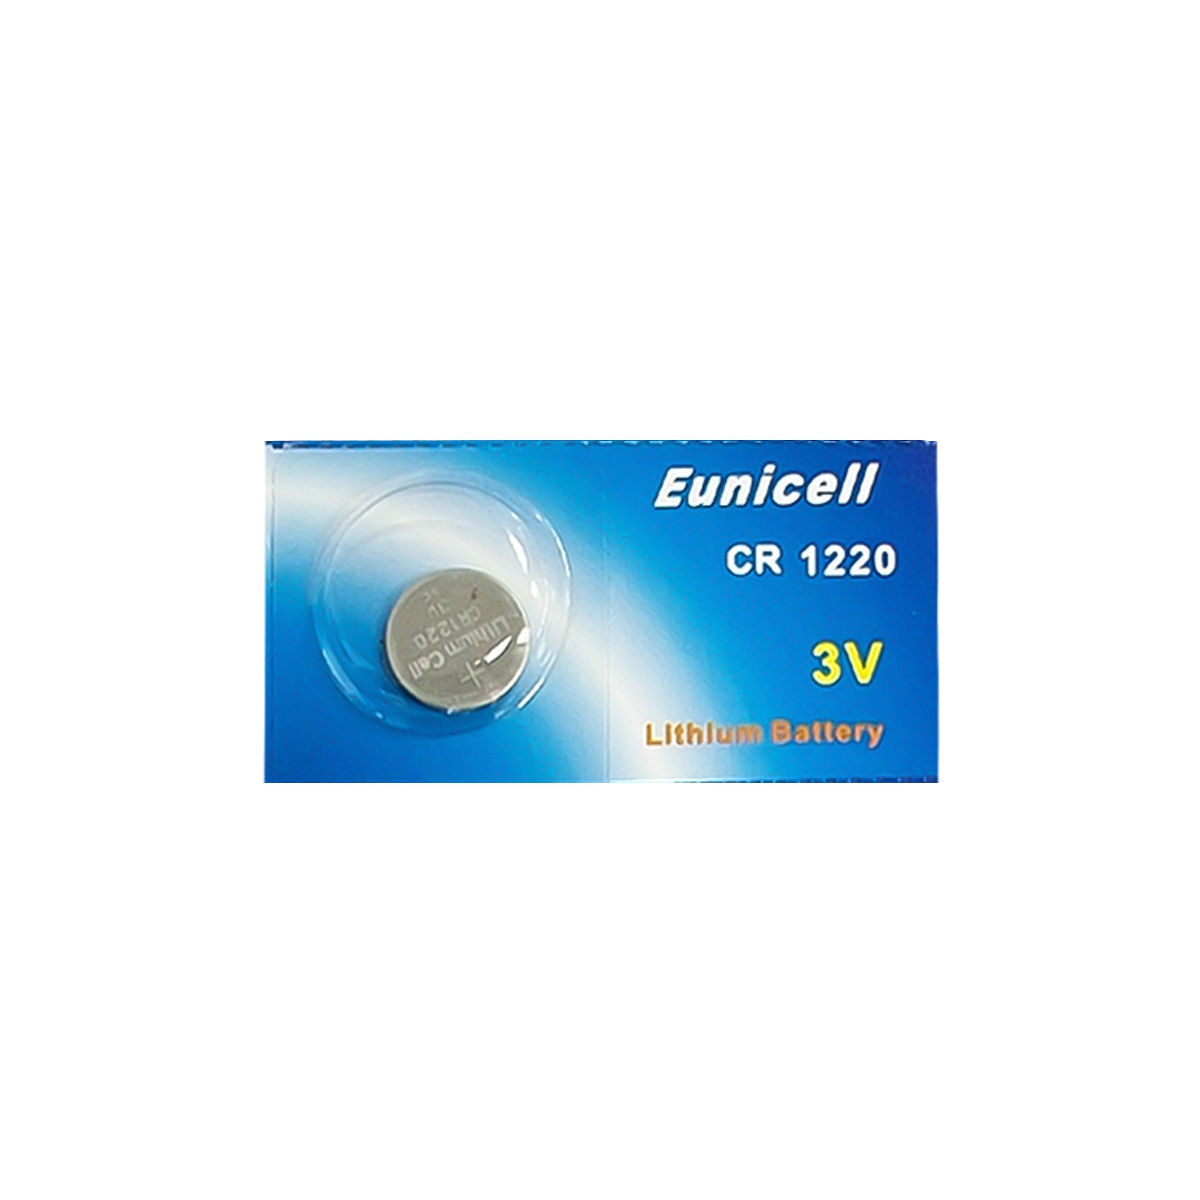 Pile électronique CR1220 EUNICELL - Blister de 1 - Lithium 3V - PILES 974